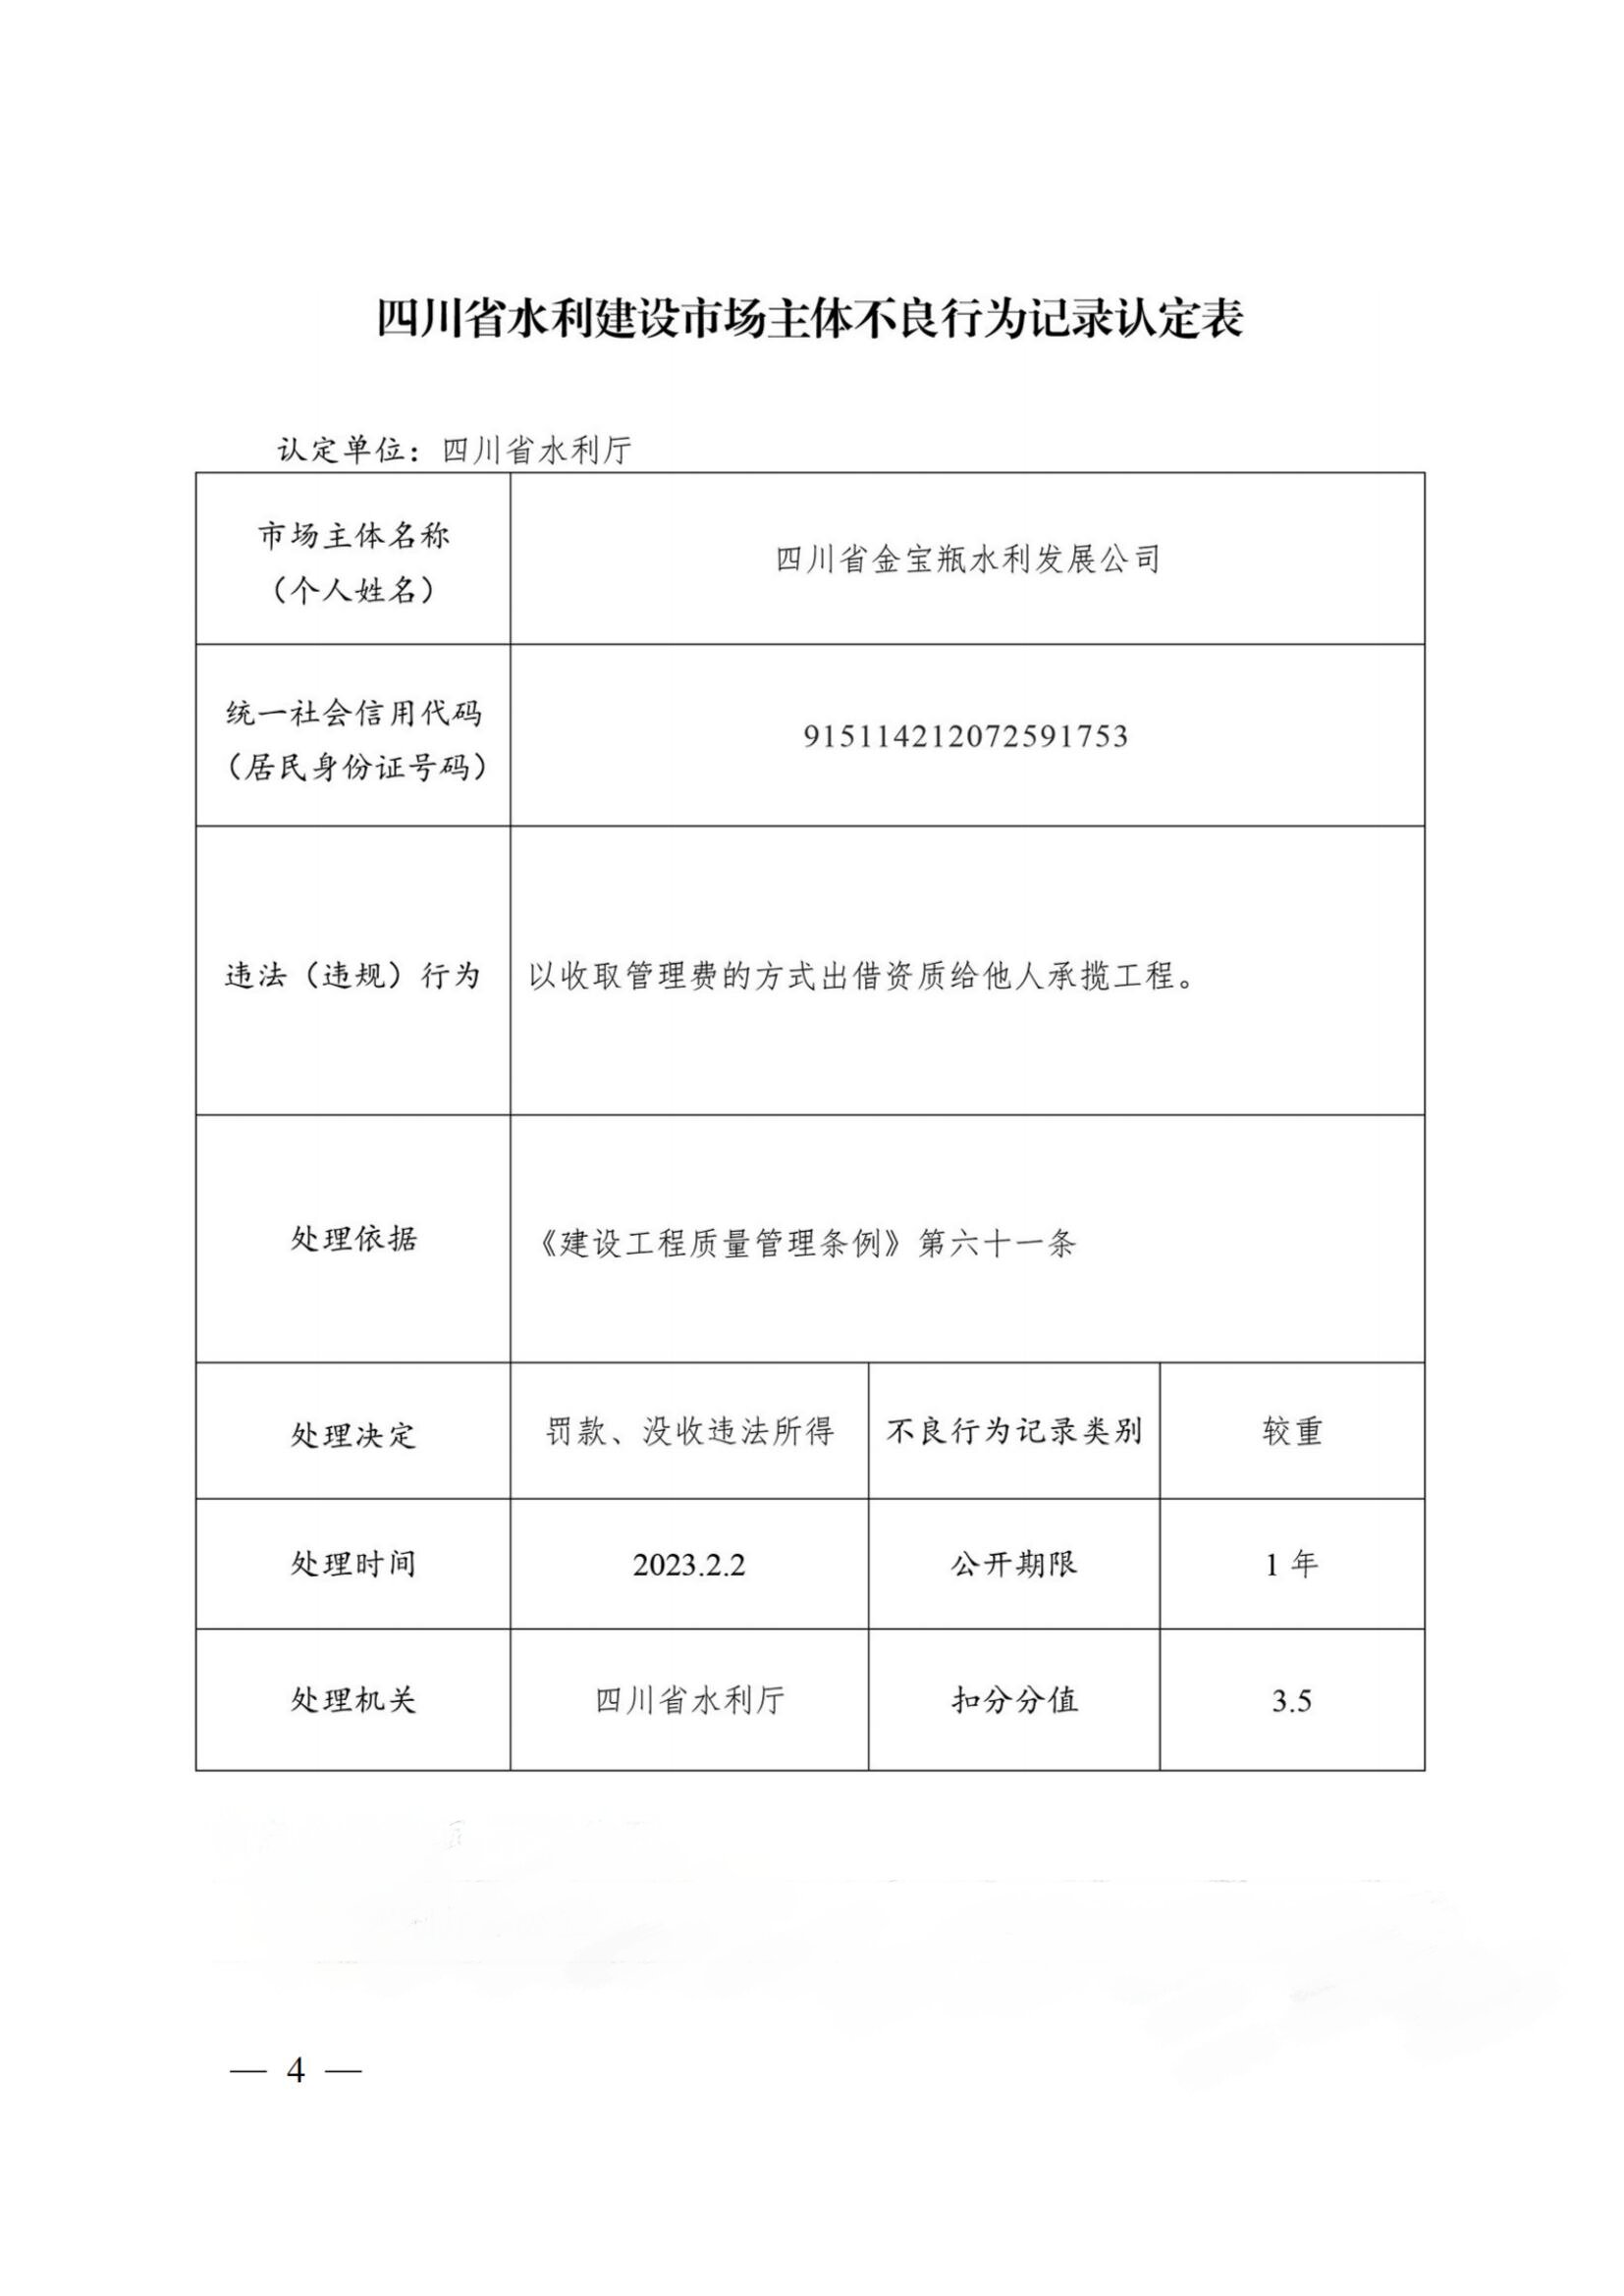 四川省水利建设市场主体不良行为记录认定表（四川省金宝瓶水利发展公司）.jpg